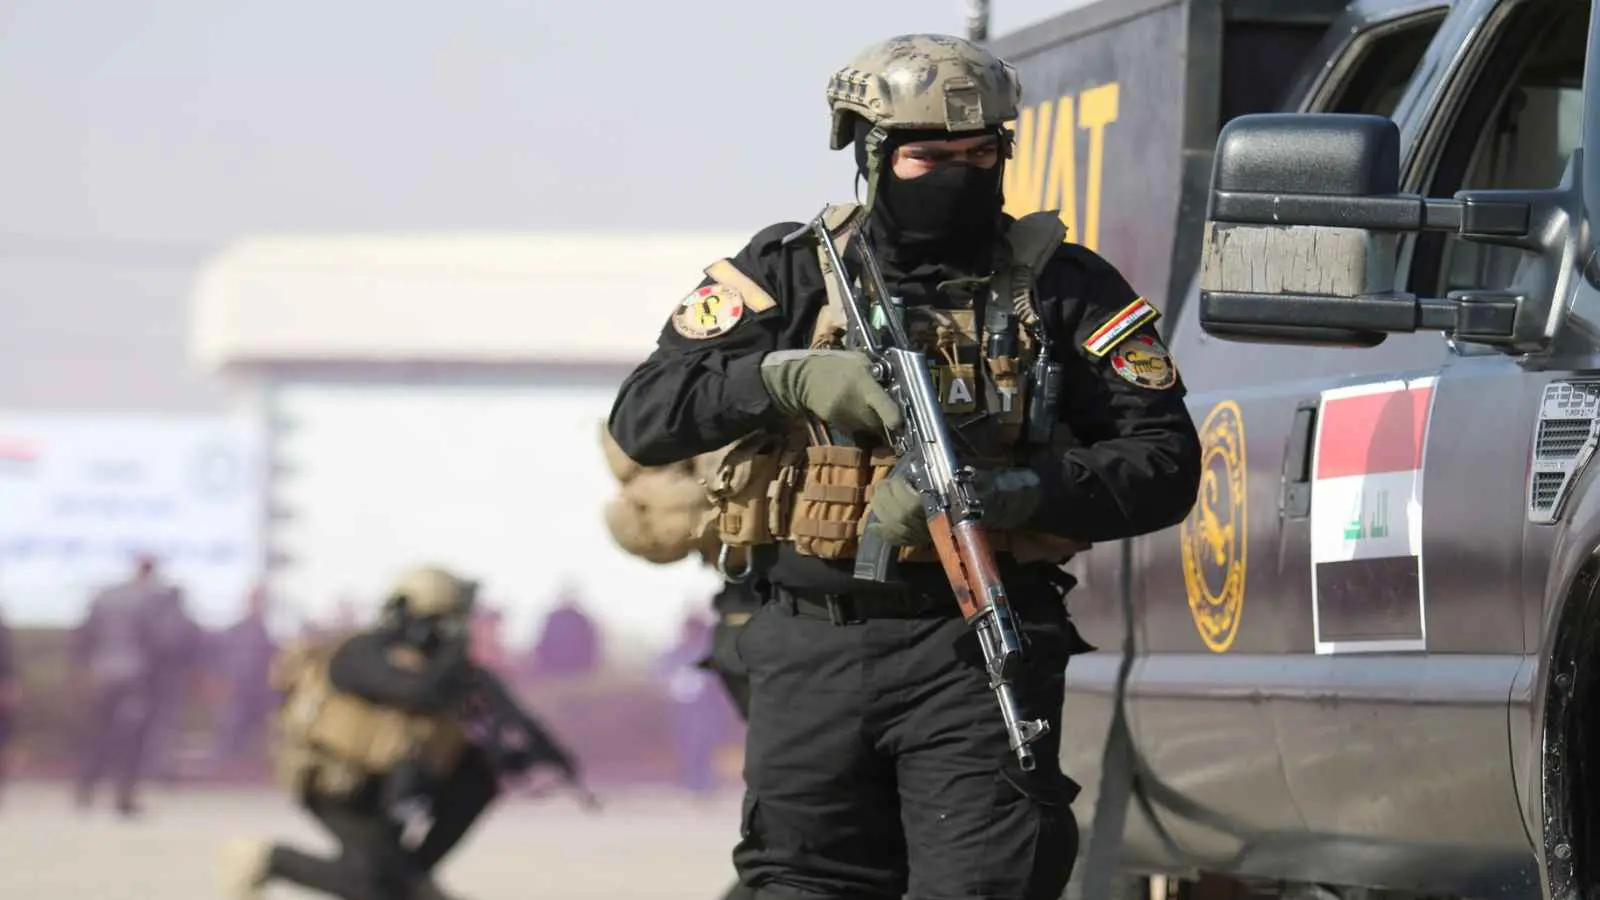 العراق.. حكم بإعدام 3 سويديين تورطوا في حادث إطلاق نار